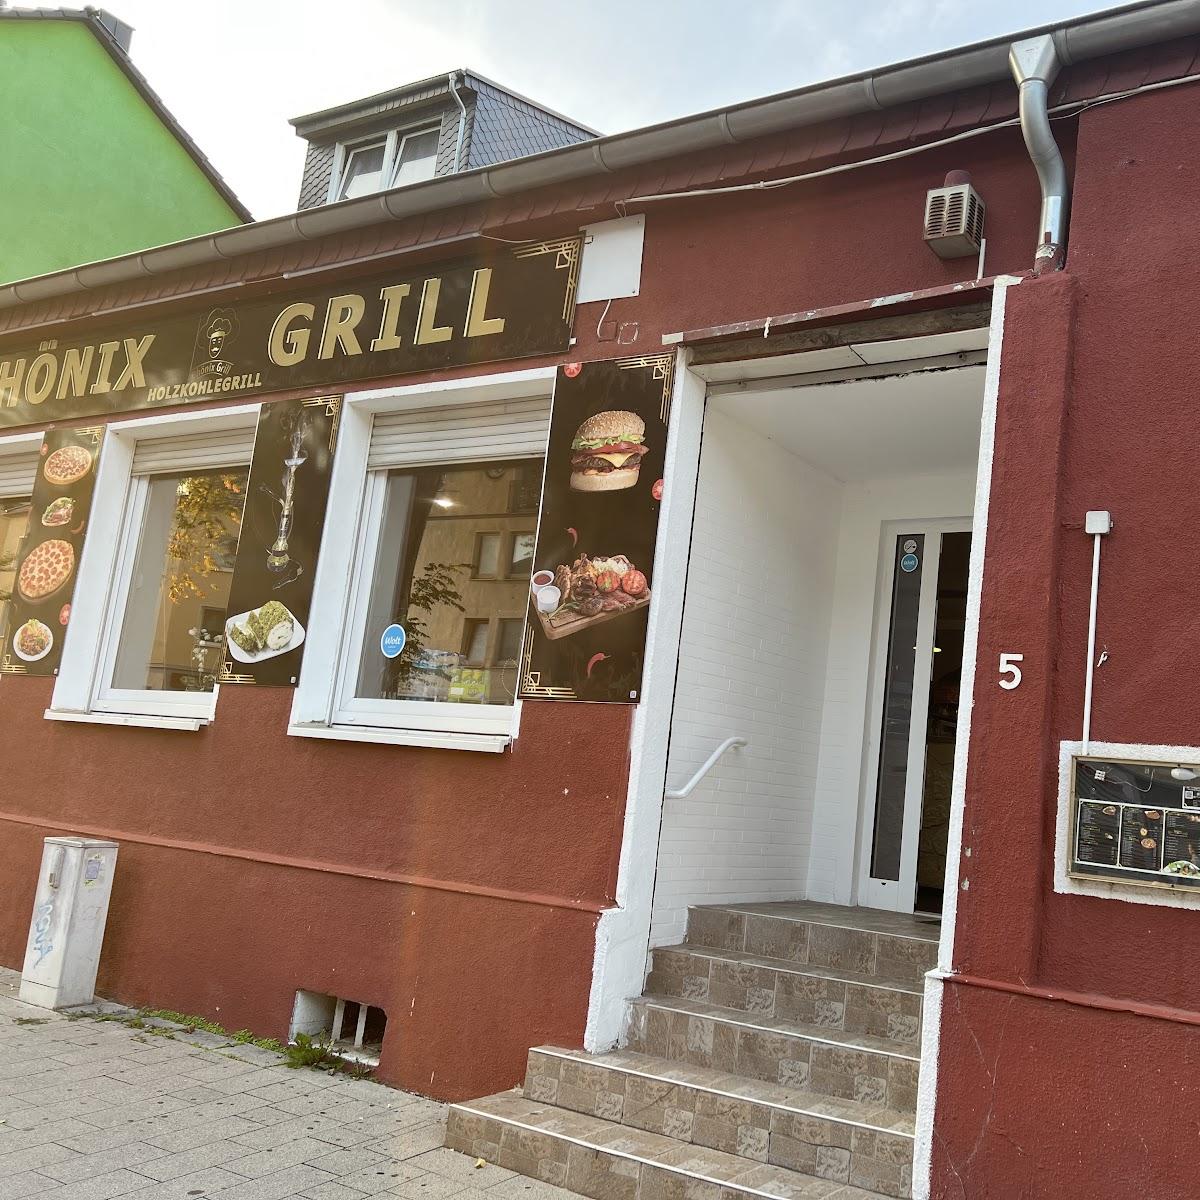 Restaurant "Phönix Grill" in Dortmund